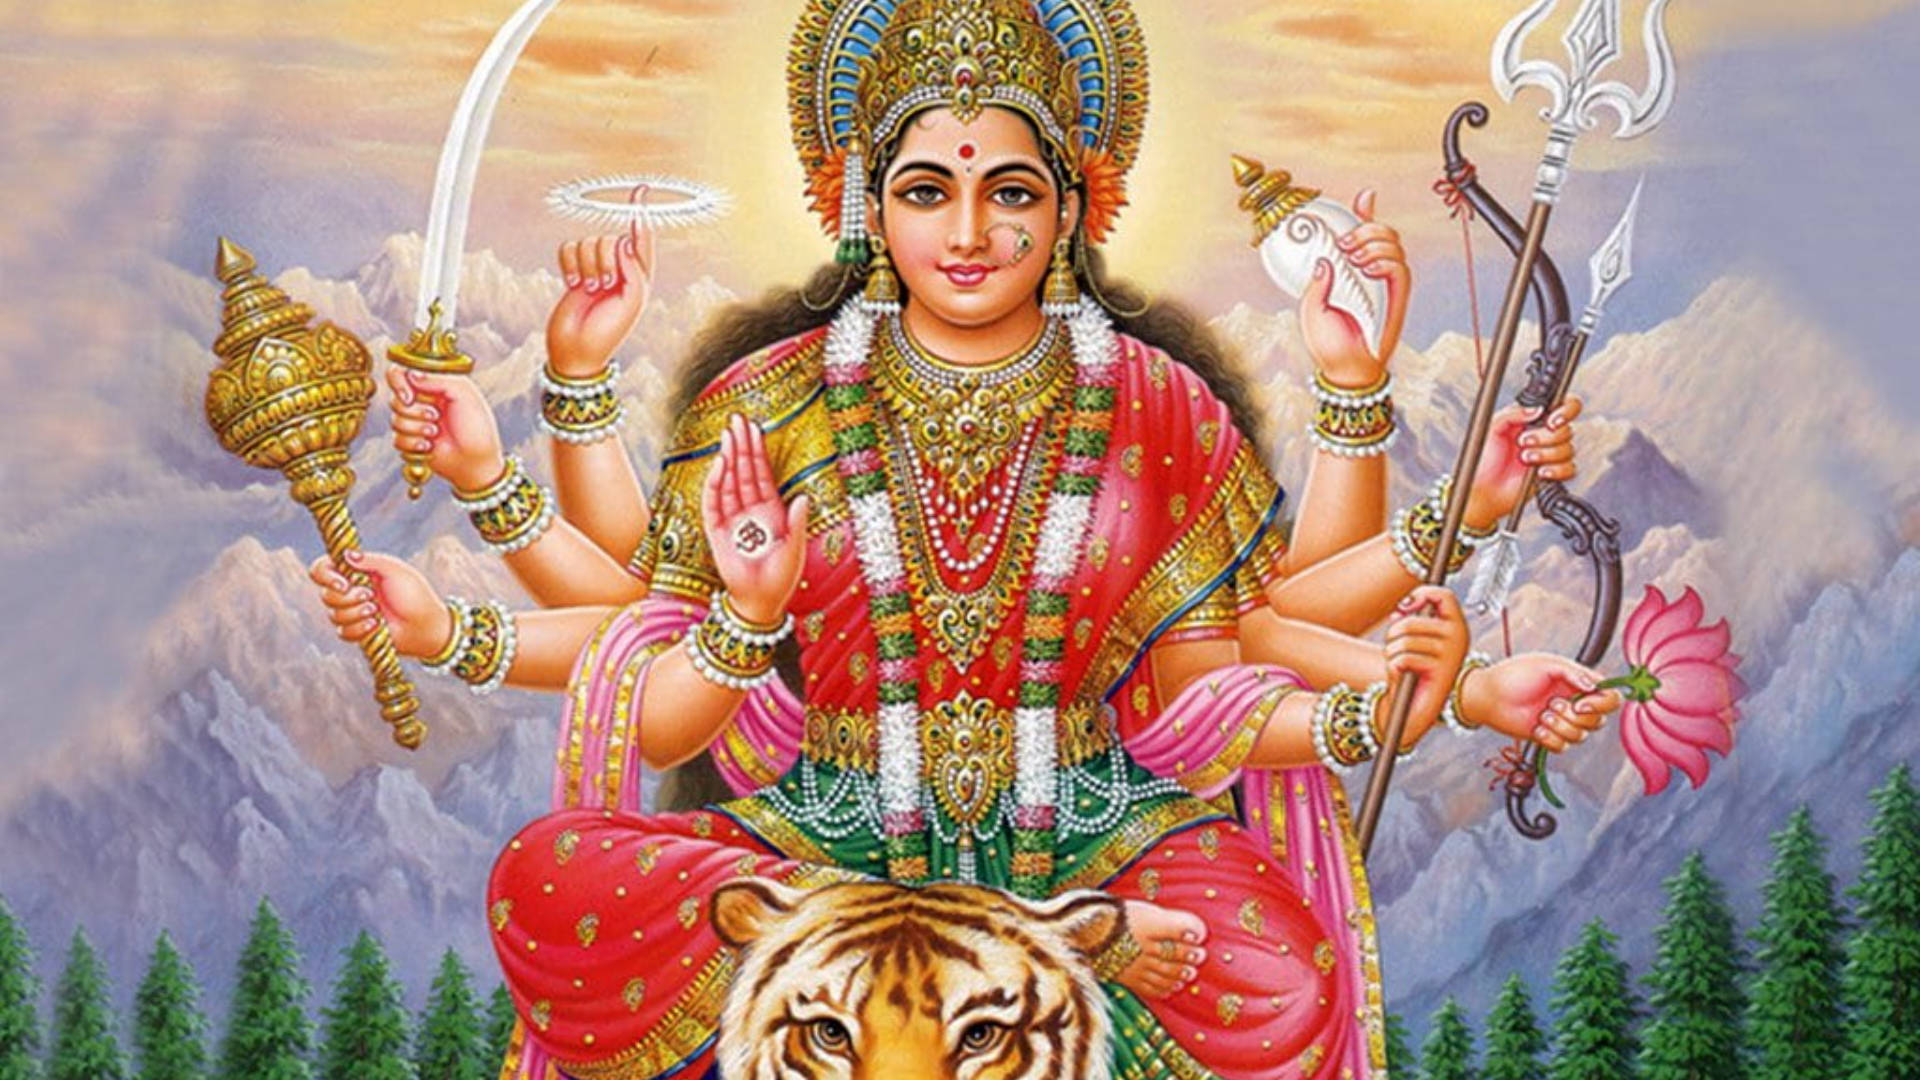 Hindu Goddess Durga And A Tiger Wallpaper